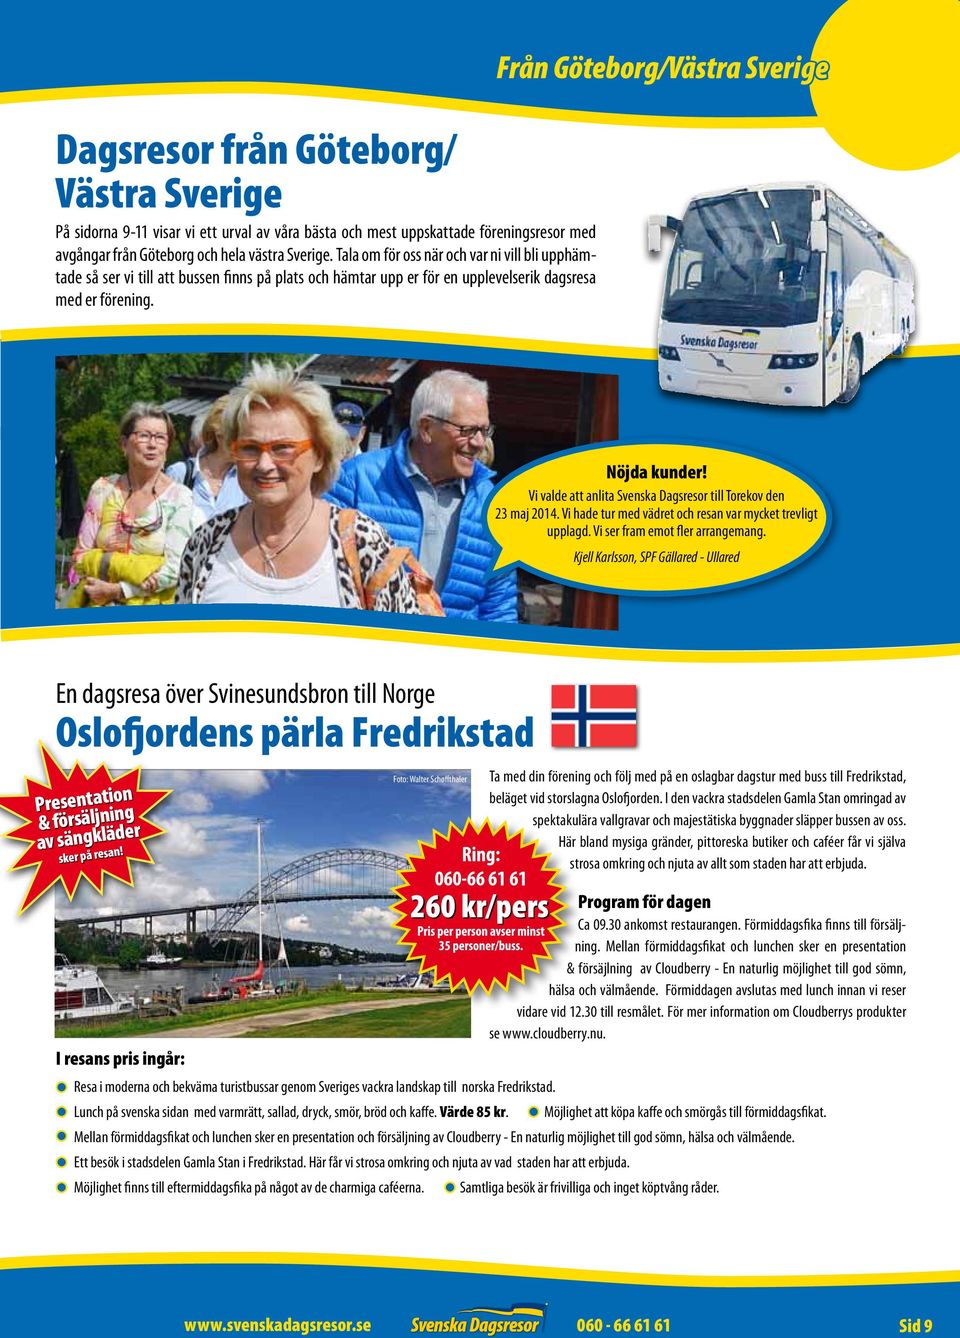 Vi valde att anlita Svenska Dagsresor till Torekov den 23 maj 2014. Vi hade tur med vädret och resan var mycket trevligt upplagd. Vi ser fram emot fler arrangemang.